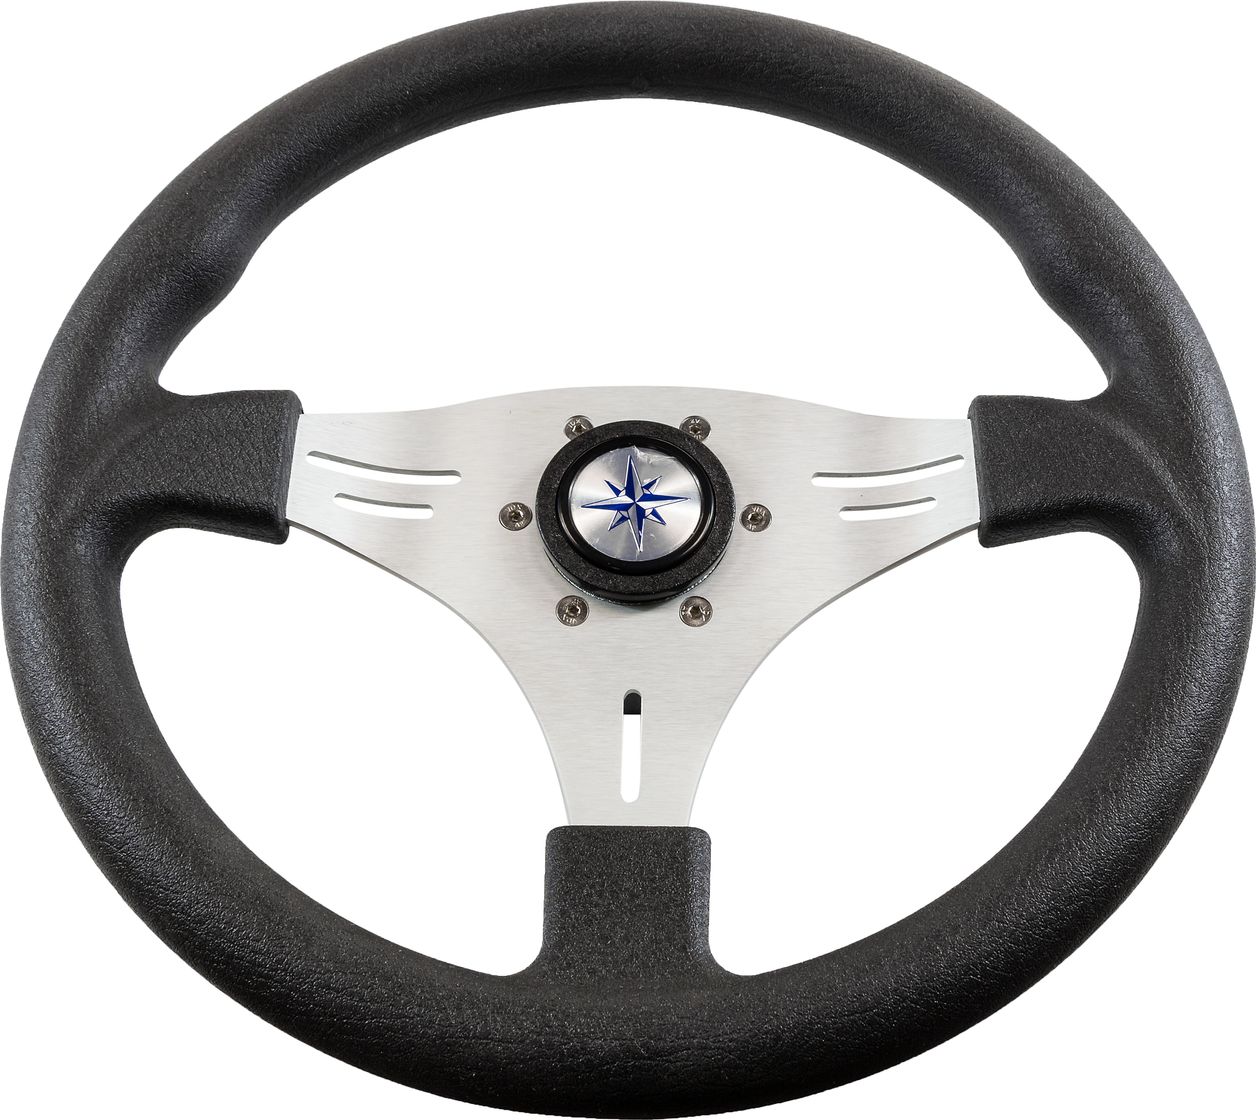 Рулевое колесо MANTA обод черный, спицы серебряные д. 355 мм VN70551-01 рулевое колесо orion обод чернокрасный спицы серебряные д 355 мм vn960101 95